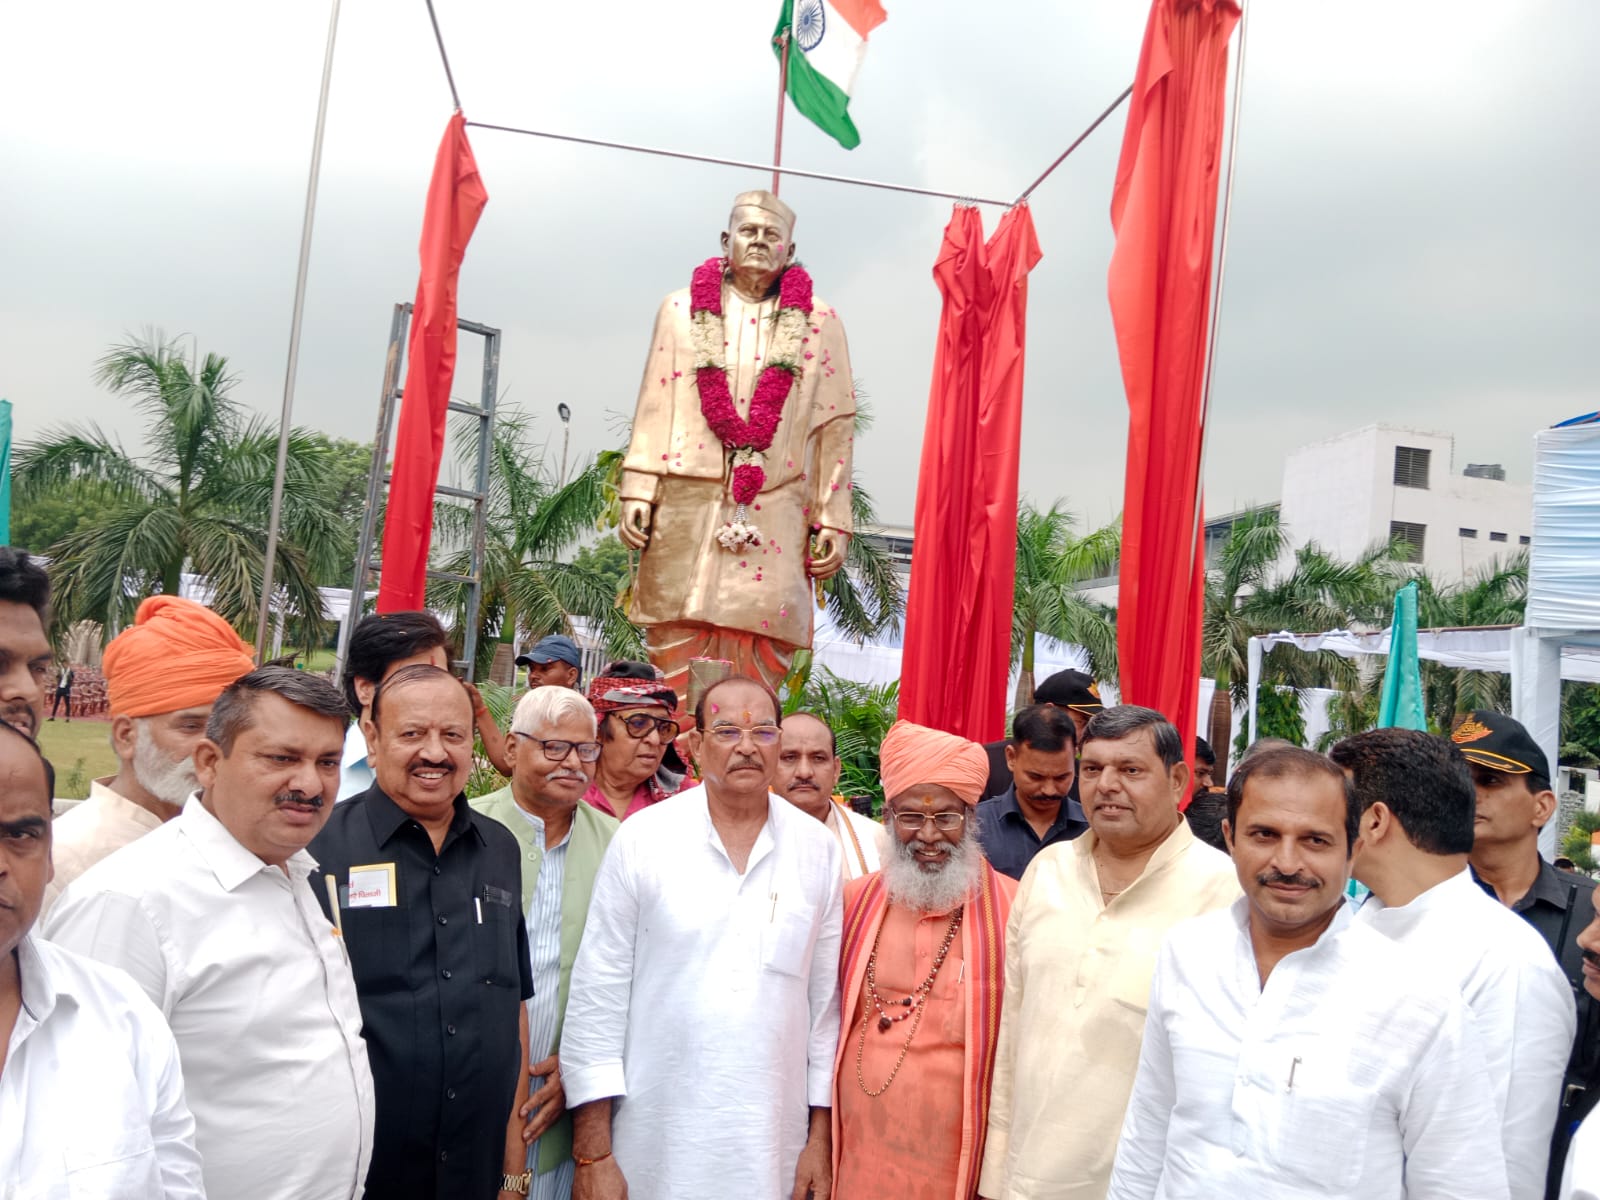 Noida News : महाशय तेजपाल की मूर्ति का हुआ अनावरण, शिवपाल व साक्षी महाराज ने दी श्रद्धांजलि